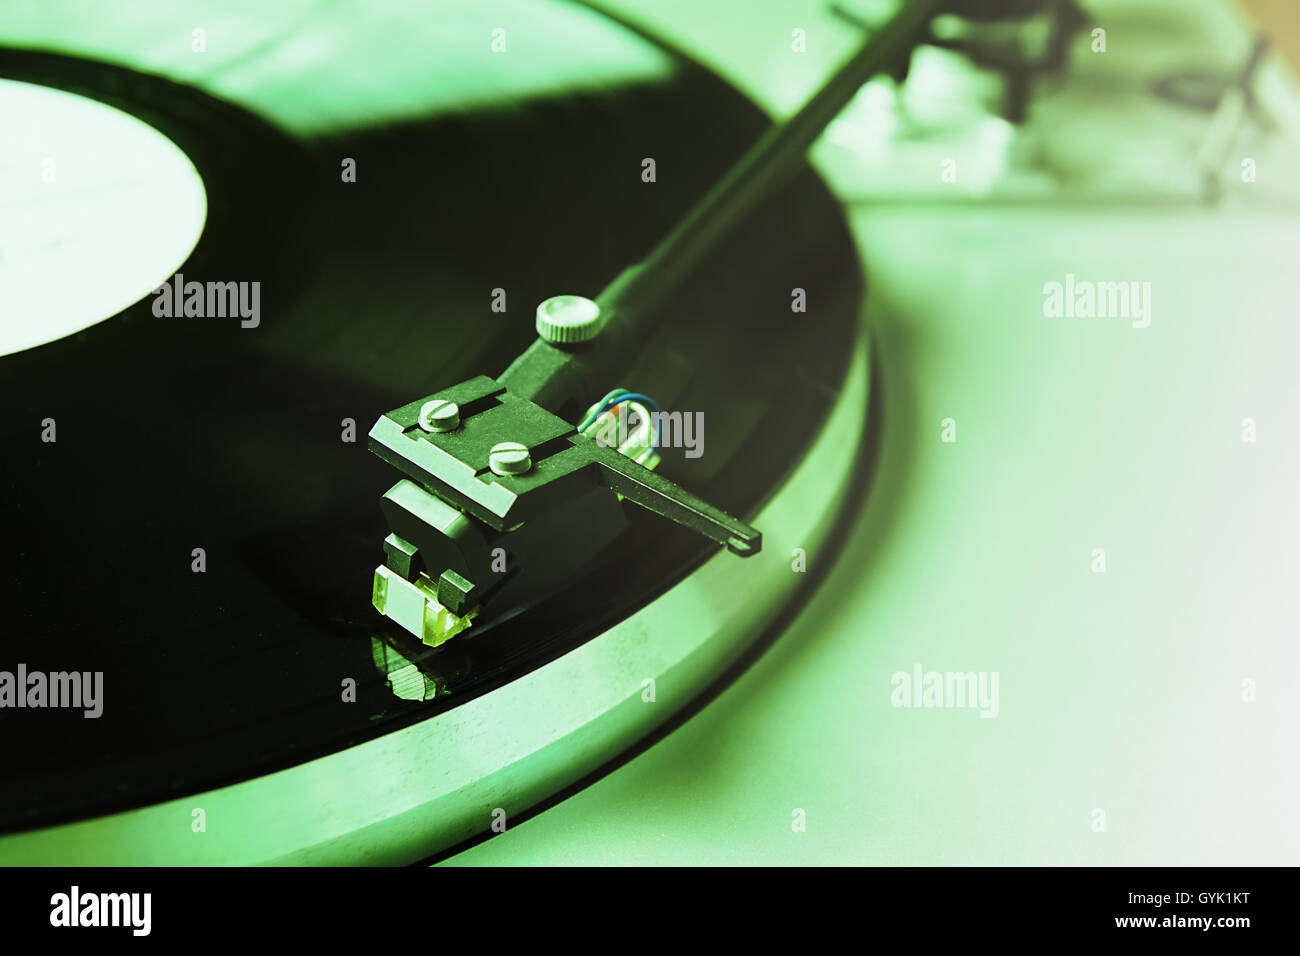 Plattenspieler Vinyl-Schallplatte mit Musik zu spielen. Home-HiFi-System für audio-Enthusiasten oder Hipster. Grüne Farbe Stockfoto